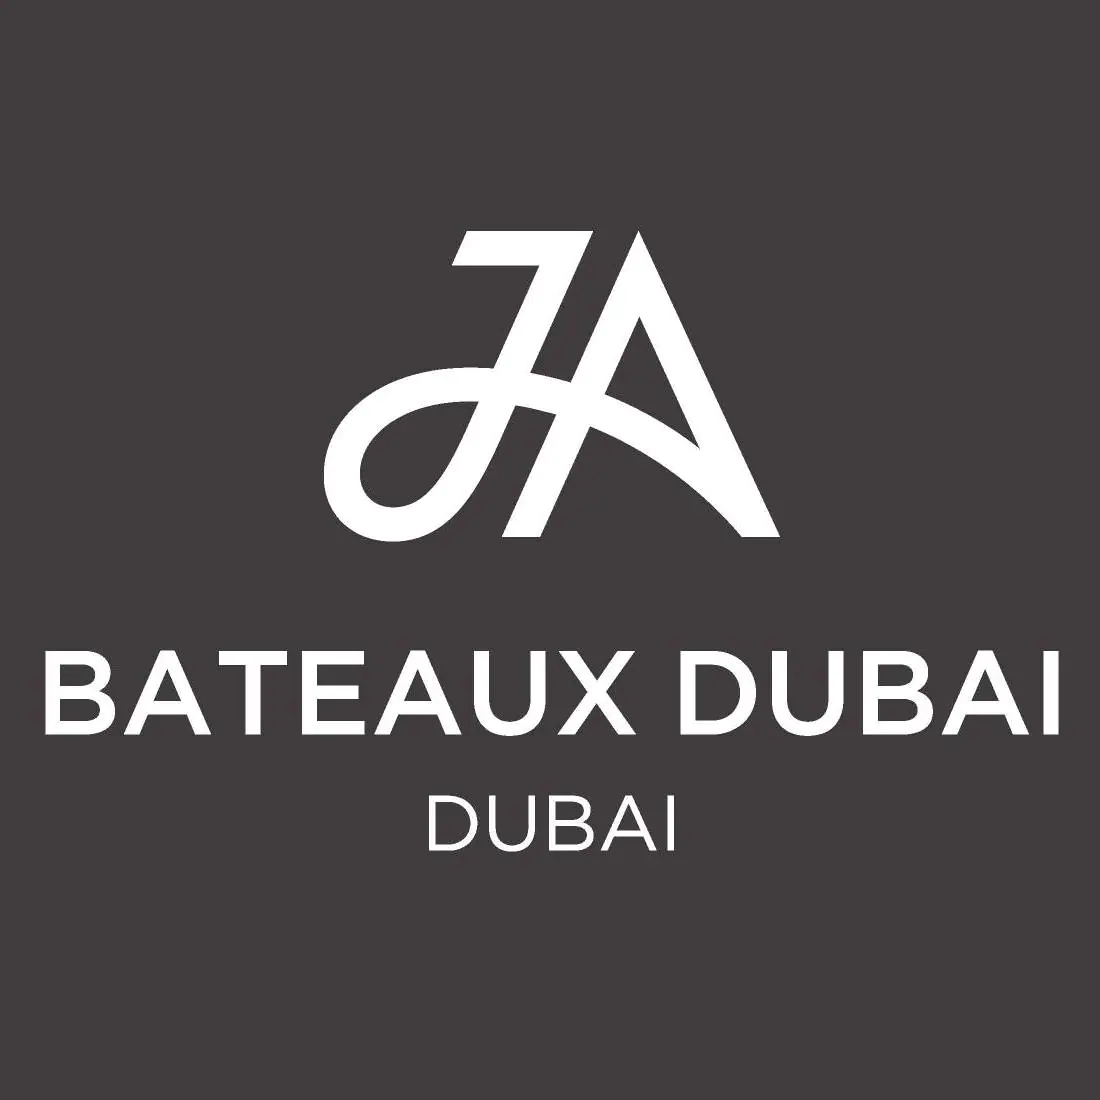 JA Bateaux - Coming Soon in UAE